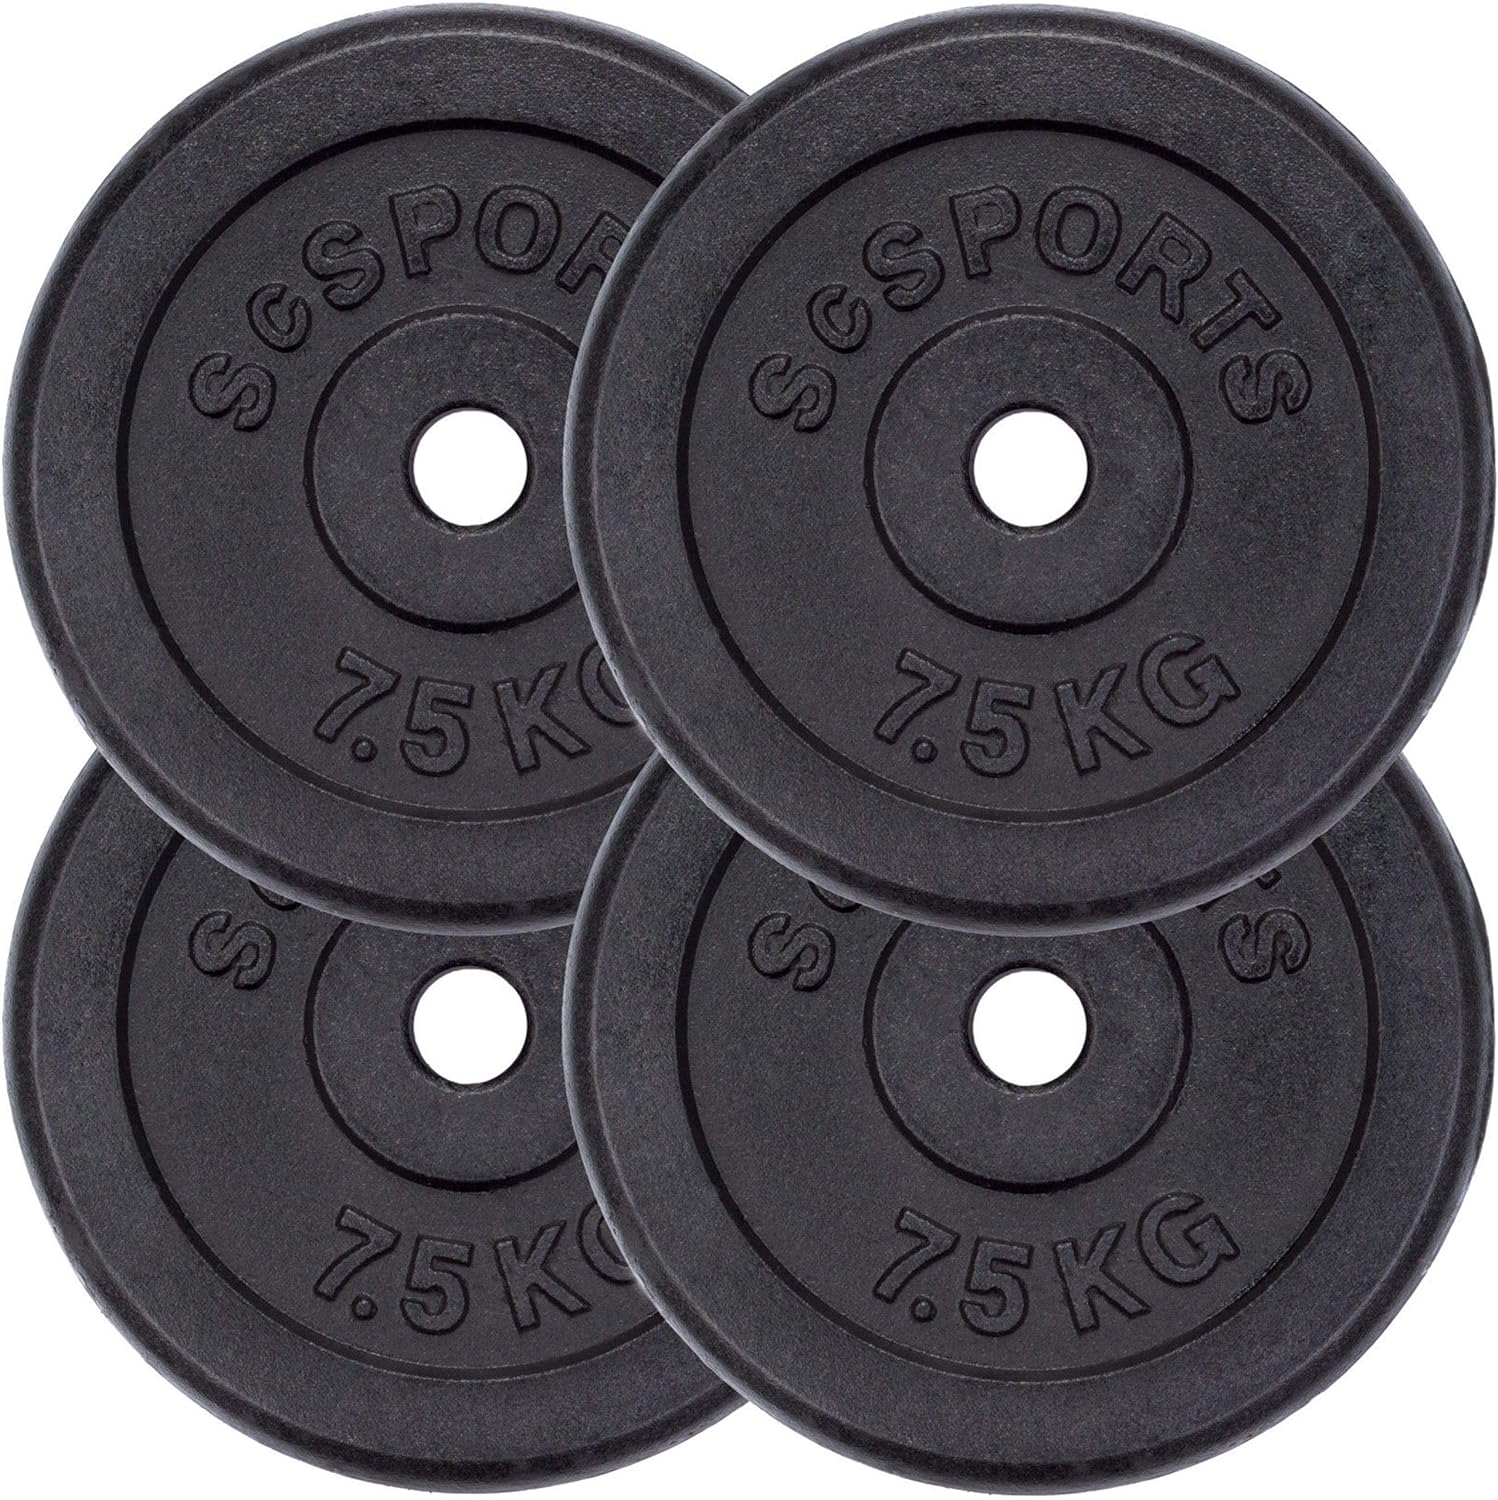 Discos de pesas de hierro fundido 30 mm estándar 1,25 kg - 20 kg